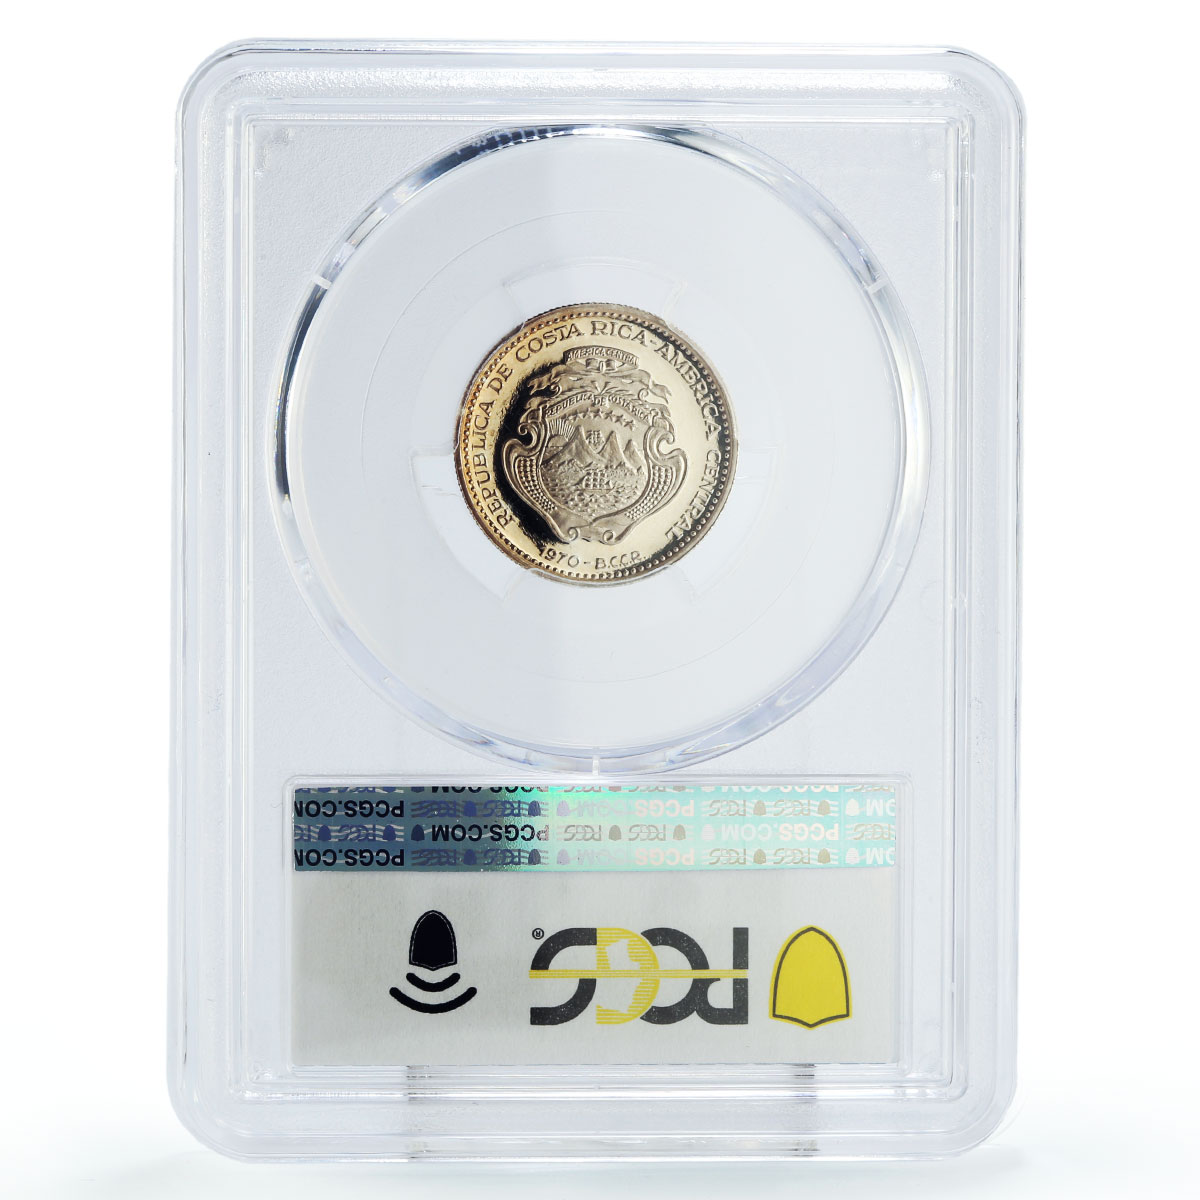 Costa Rica 2 colones Central Bank 20th Anniversary PR67 PCGS silver coin 1970